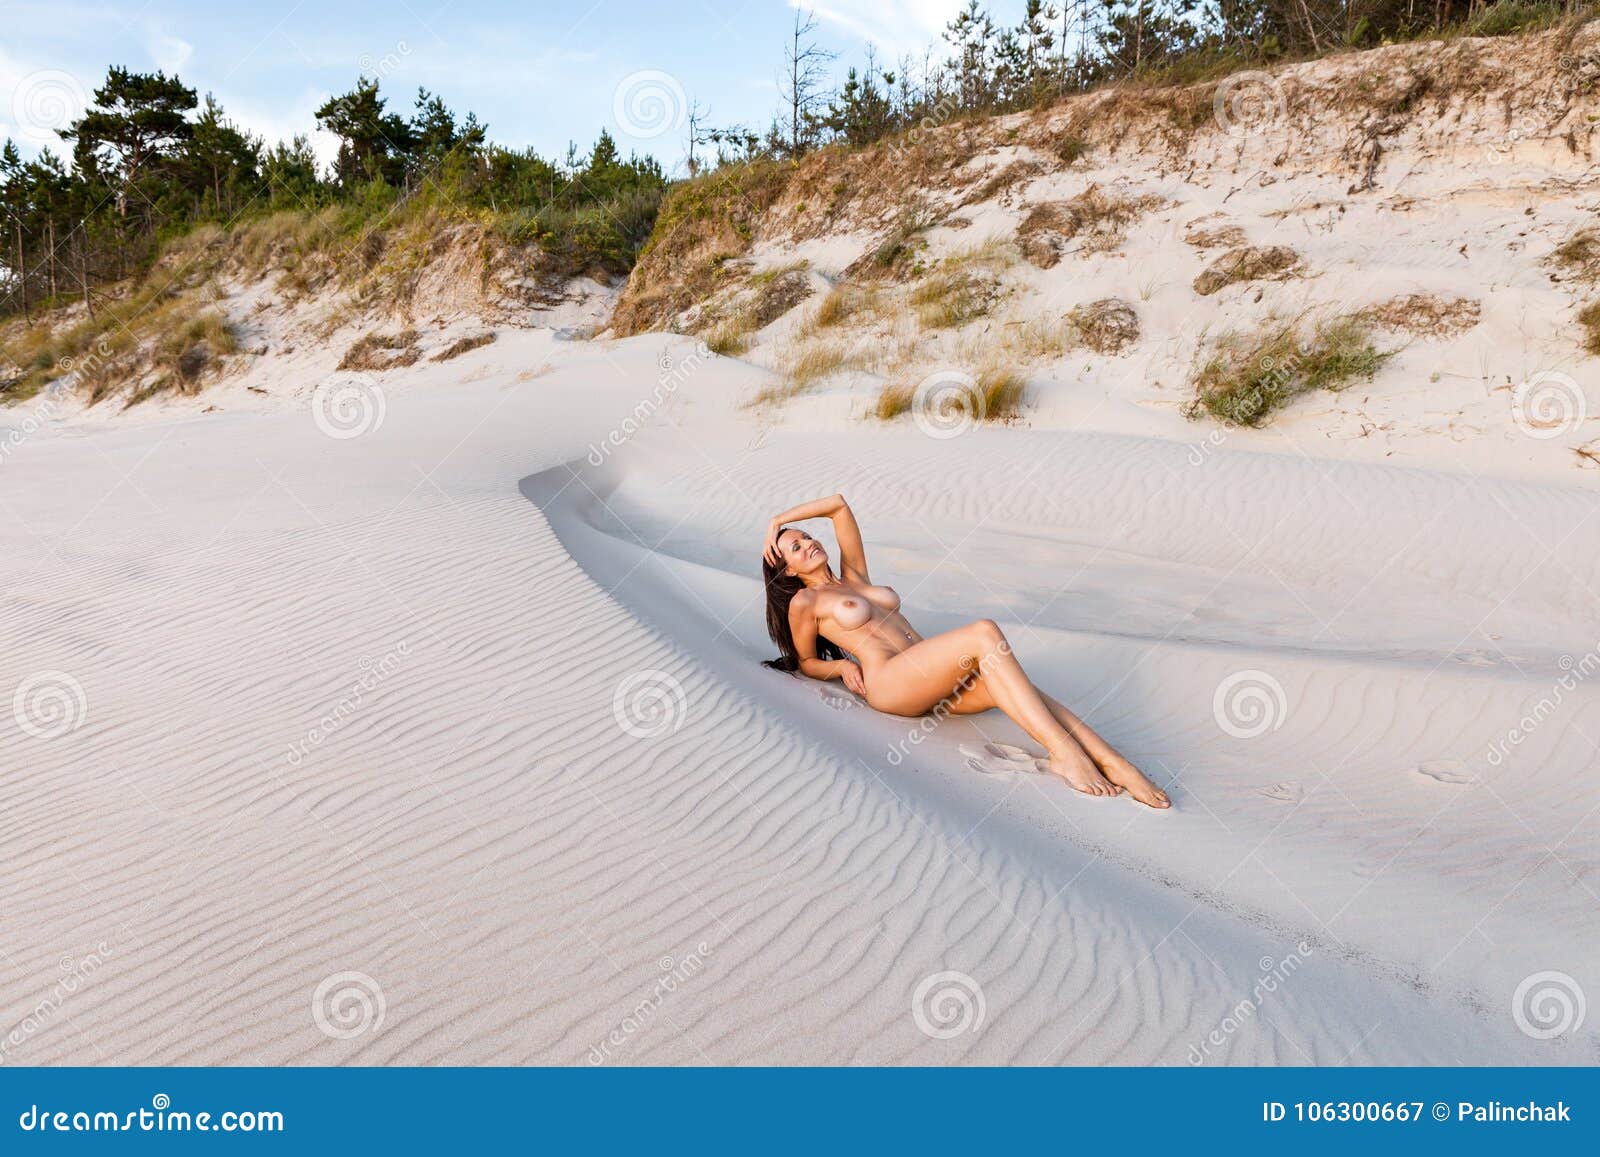 Nude girl sun tanning on beach